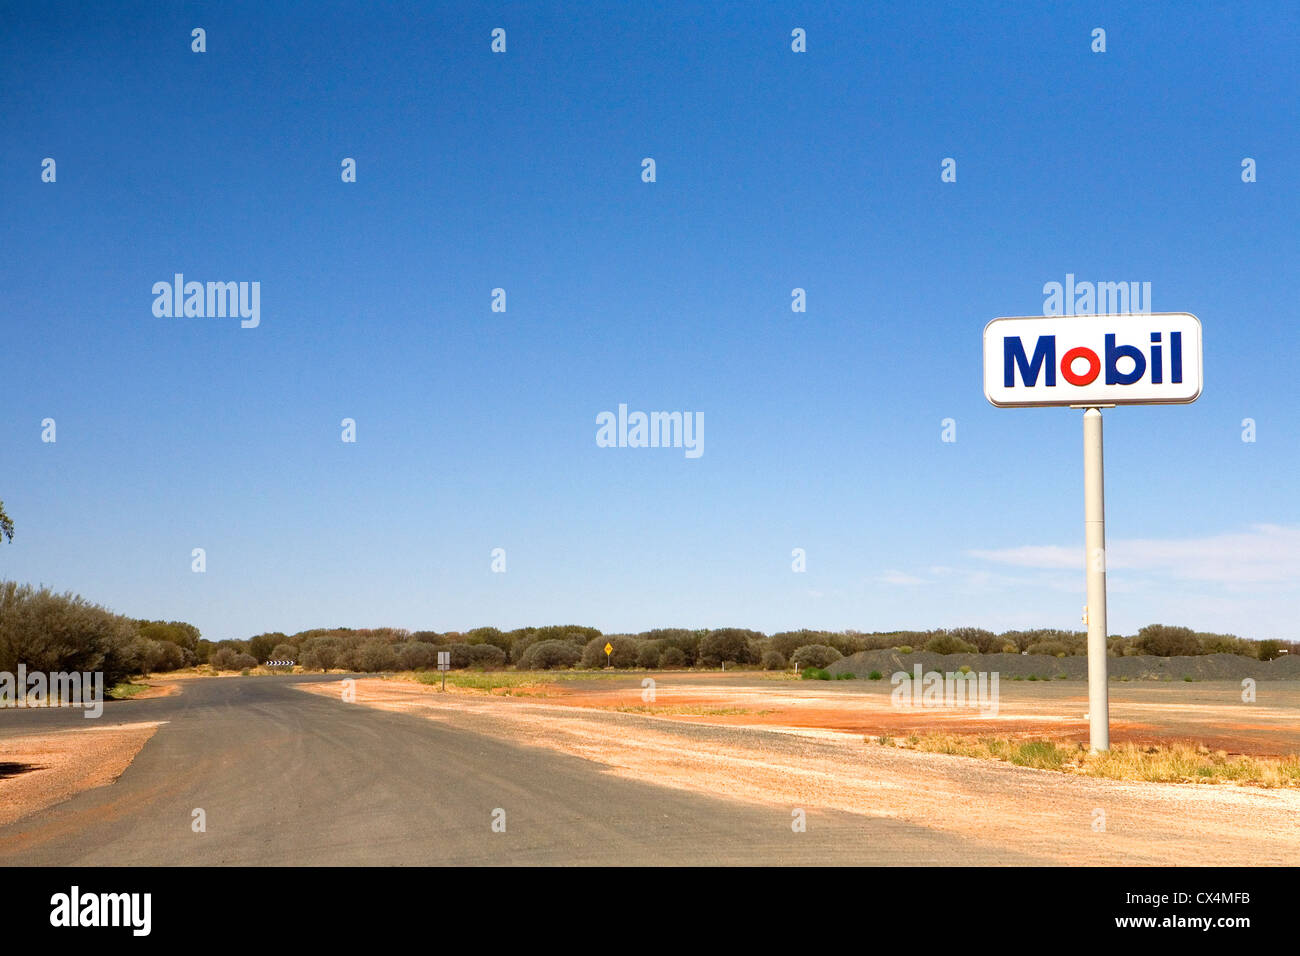 Mobil, Sign, Australia, Outback, desert, heat, roadhouse Stock Photo